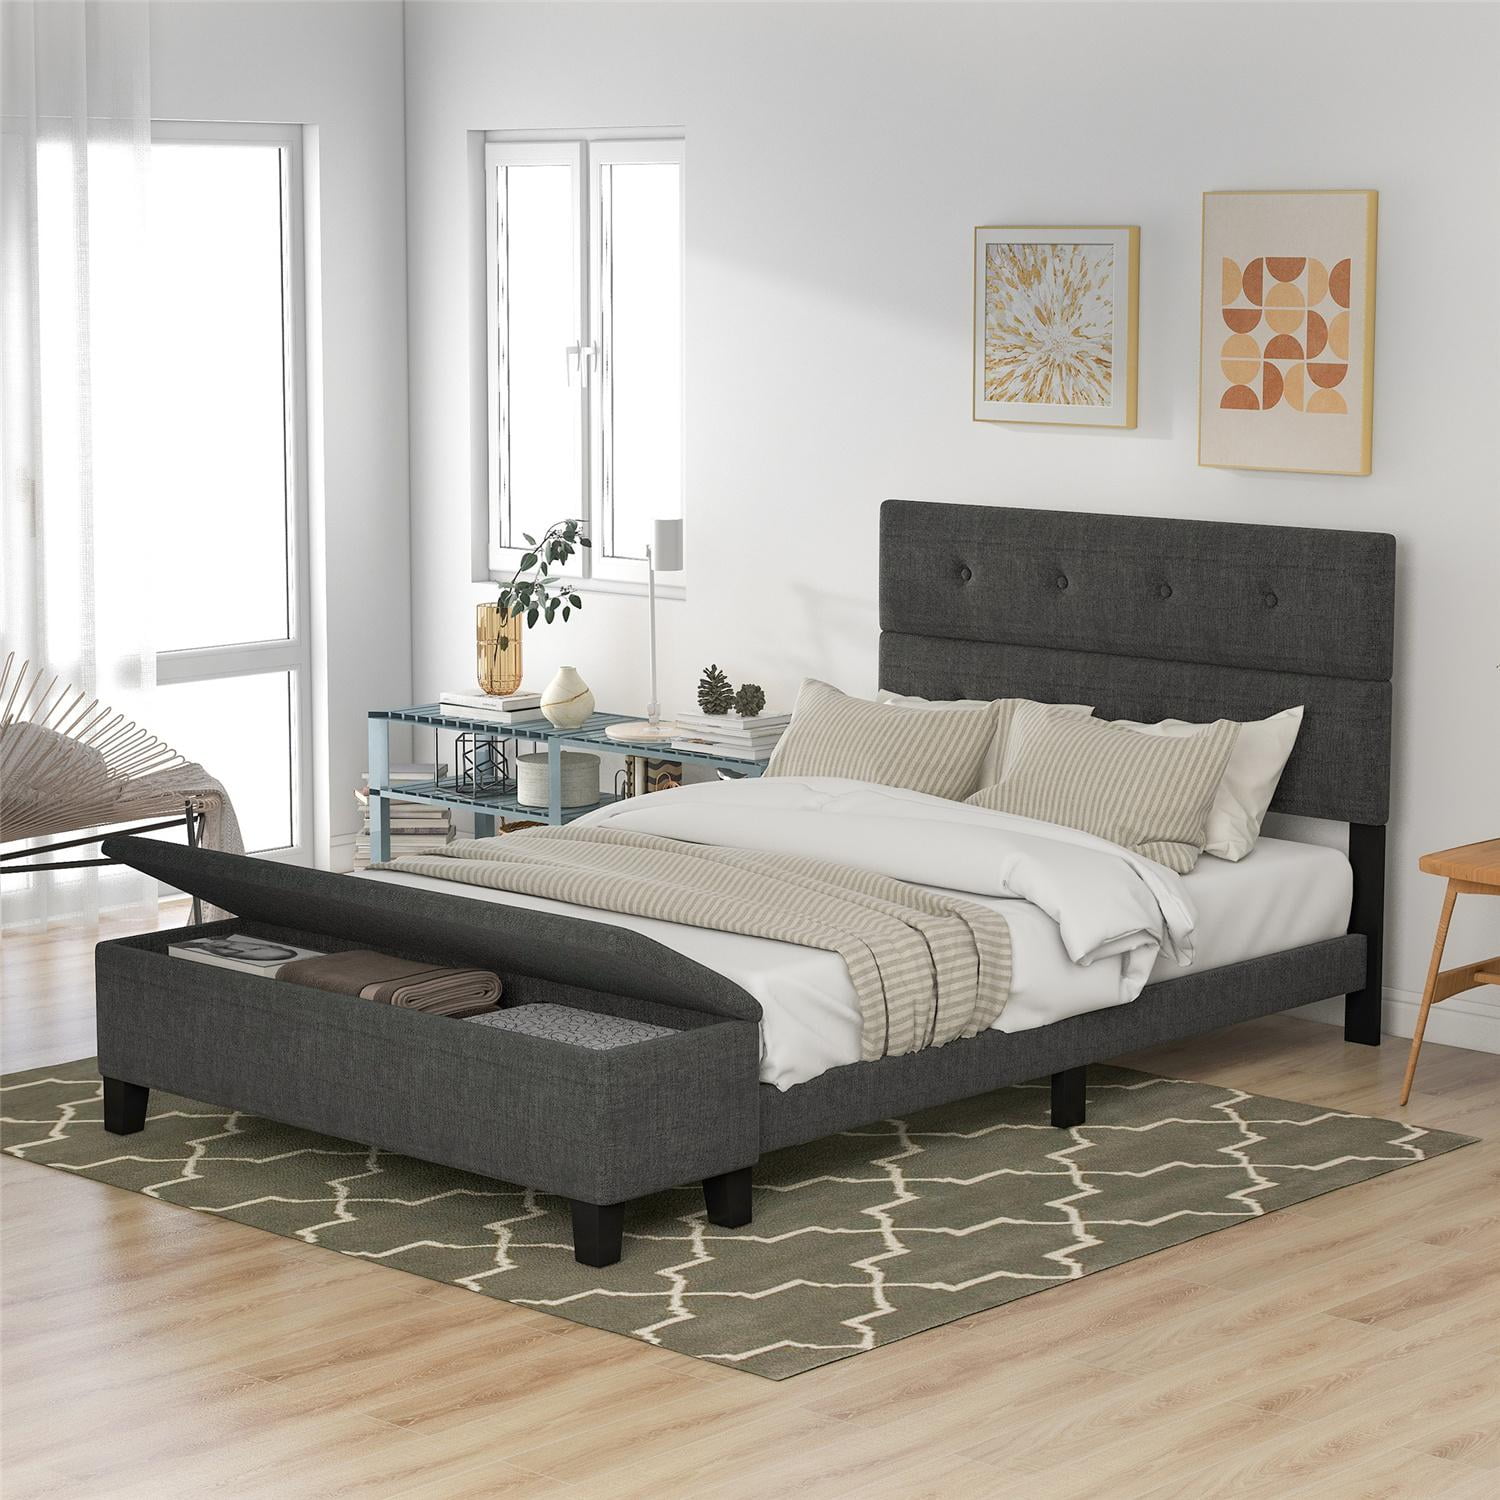 Cheap queen size beds with mattress